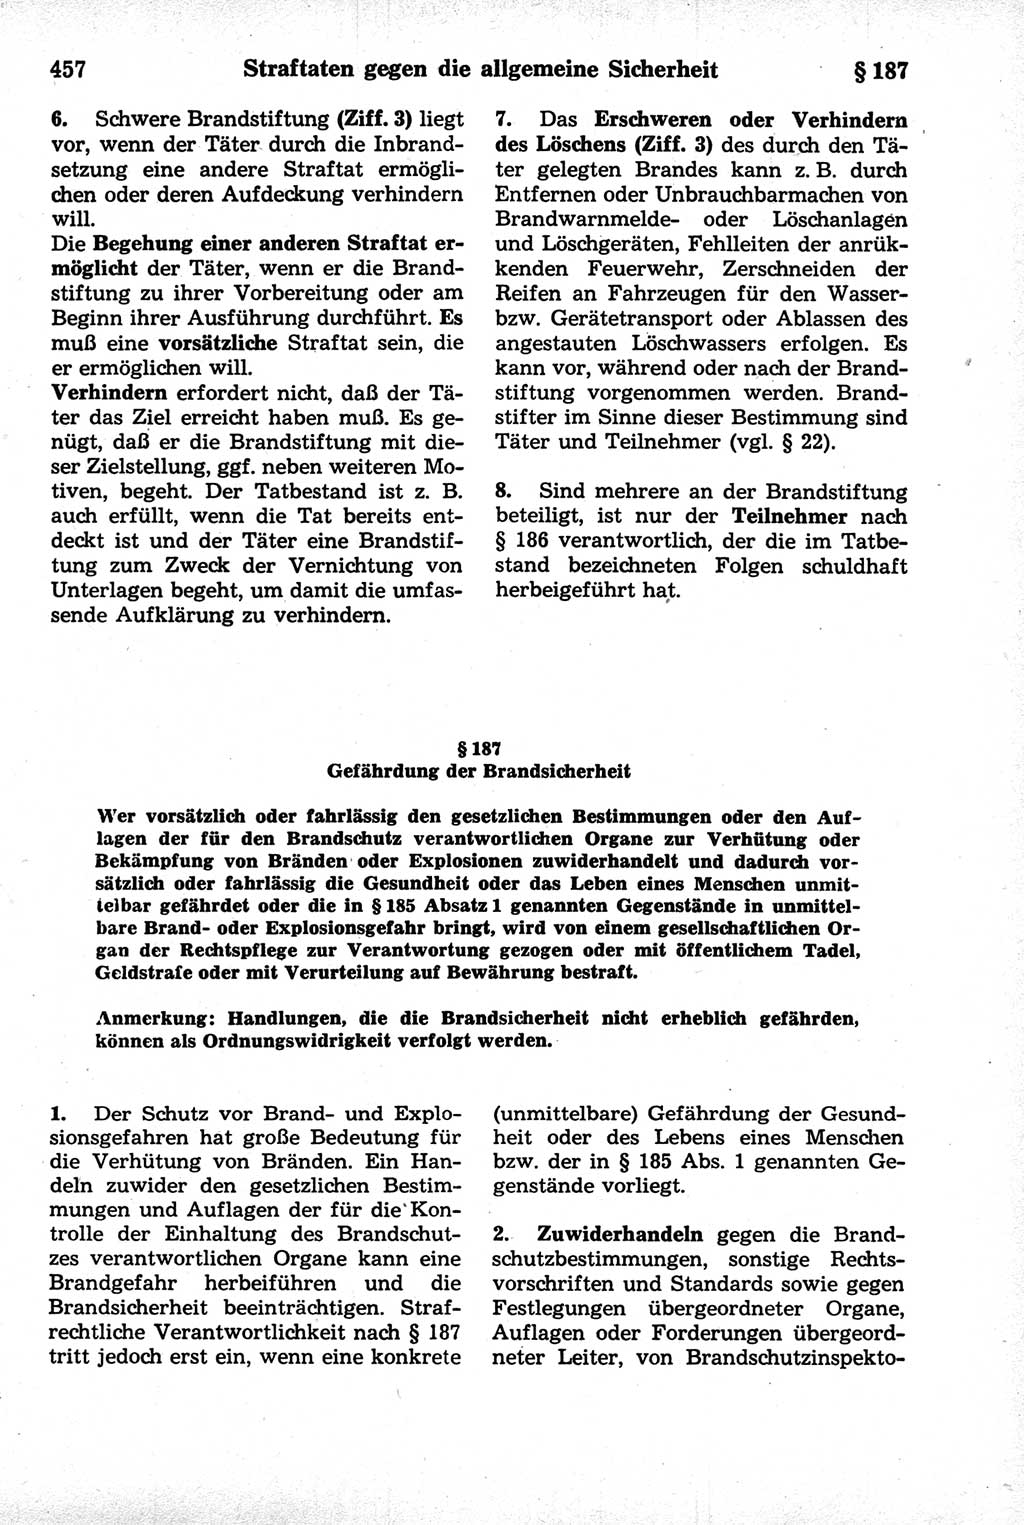 Strafrecht der Deutschen Demokratischen Republik (DDR), Kommentar zum Strafgesetzbuch (StGB) 1981, Seite 457 (Strafr. DDR Komm. StGB 1981, S. 457)